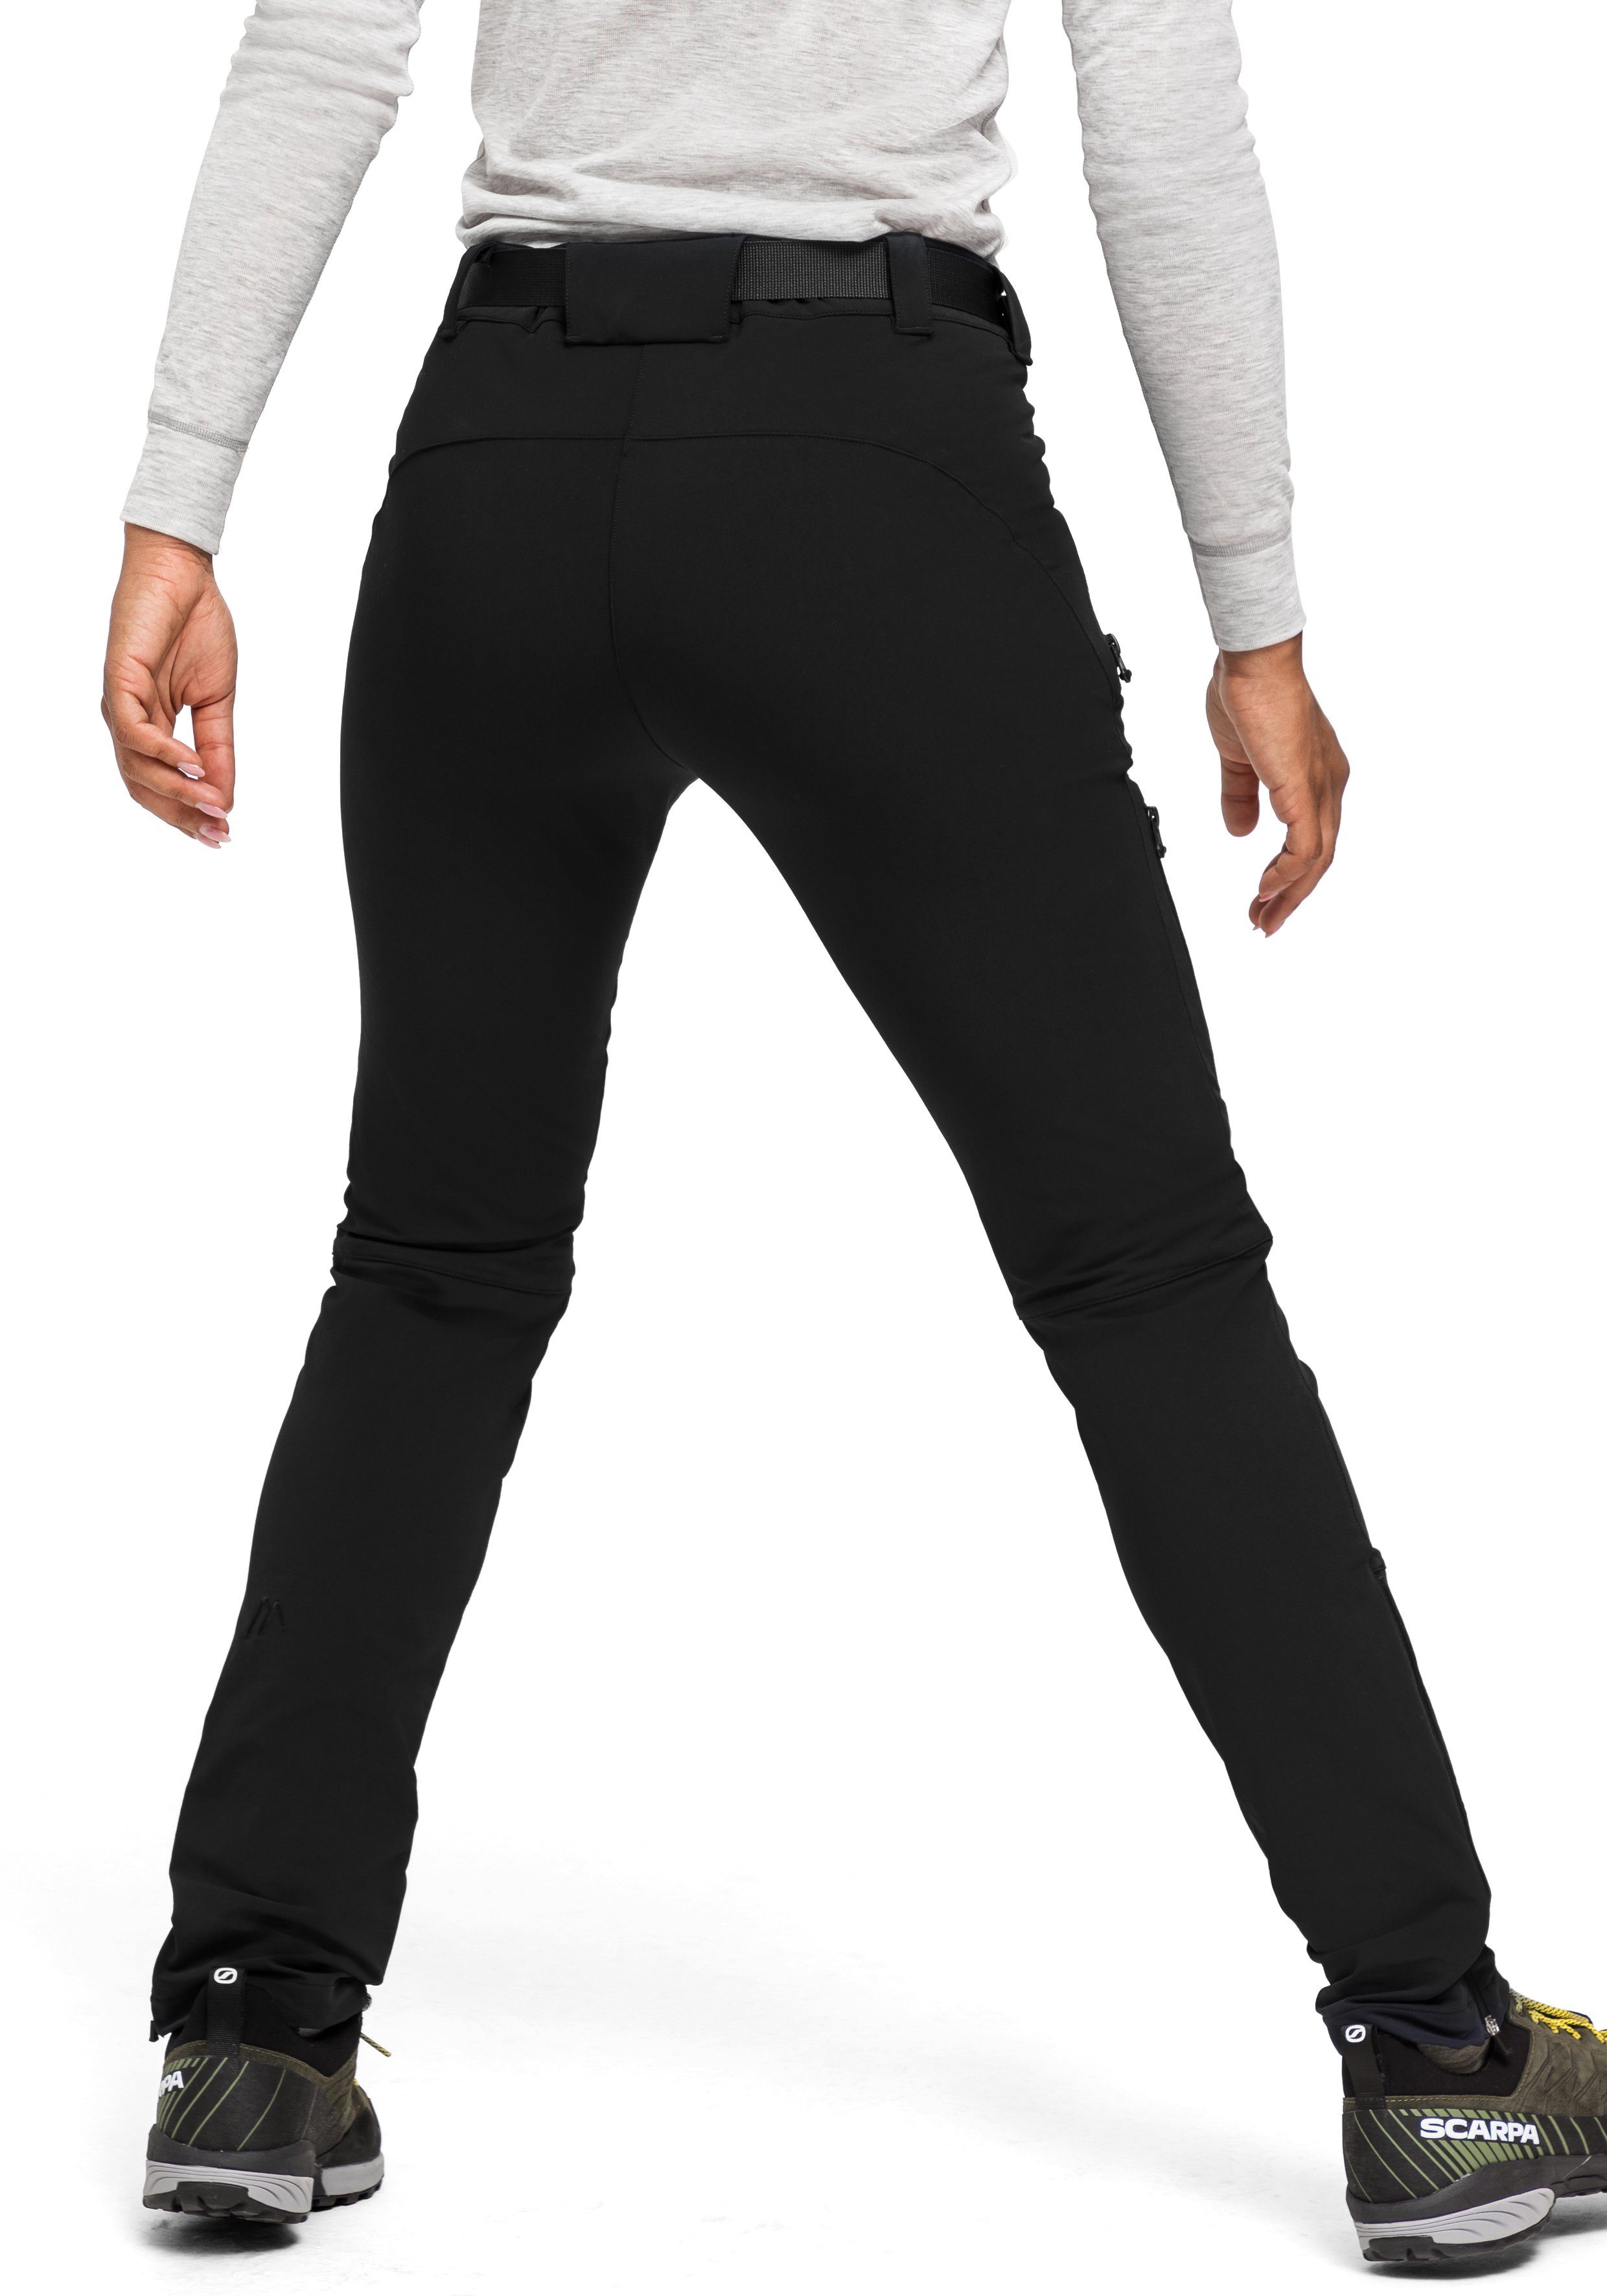 Funktionshose Slimfit, elastisch, Maier Trekkinghose, schwarz Lana Sports schnelltrocknend slim